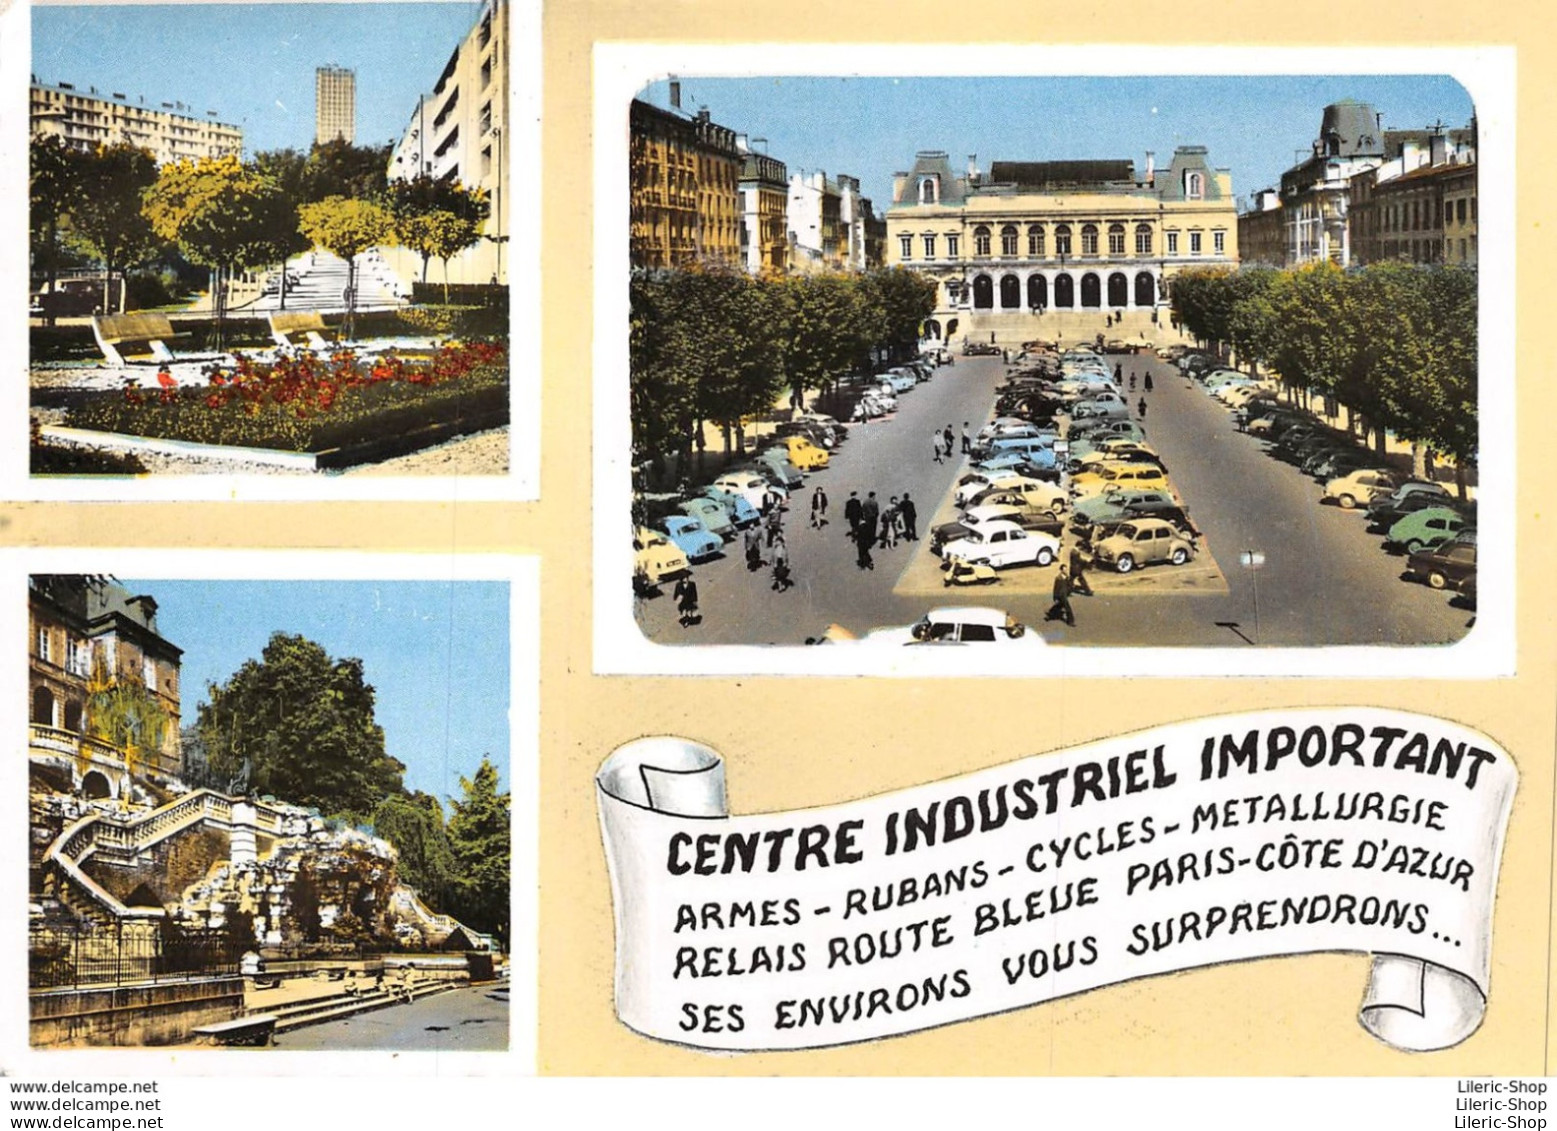 CPSM  ±1960 - SAINT-ÉTIENNE - Centre Industriel Important - Automobiles - 4 Cv Dauphine - 2 Cv DS - Éd. BAURE - Saint Etienne